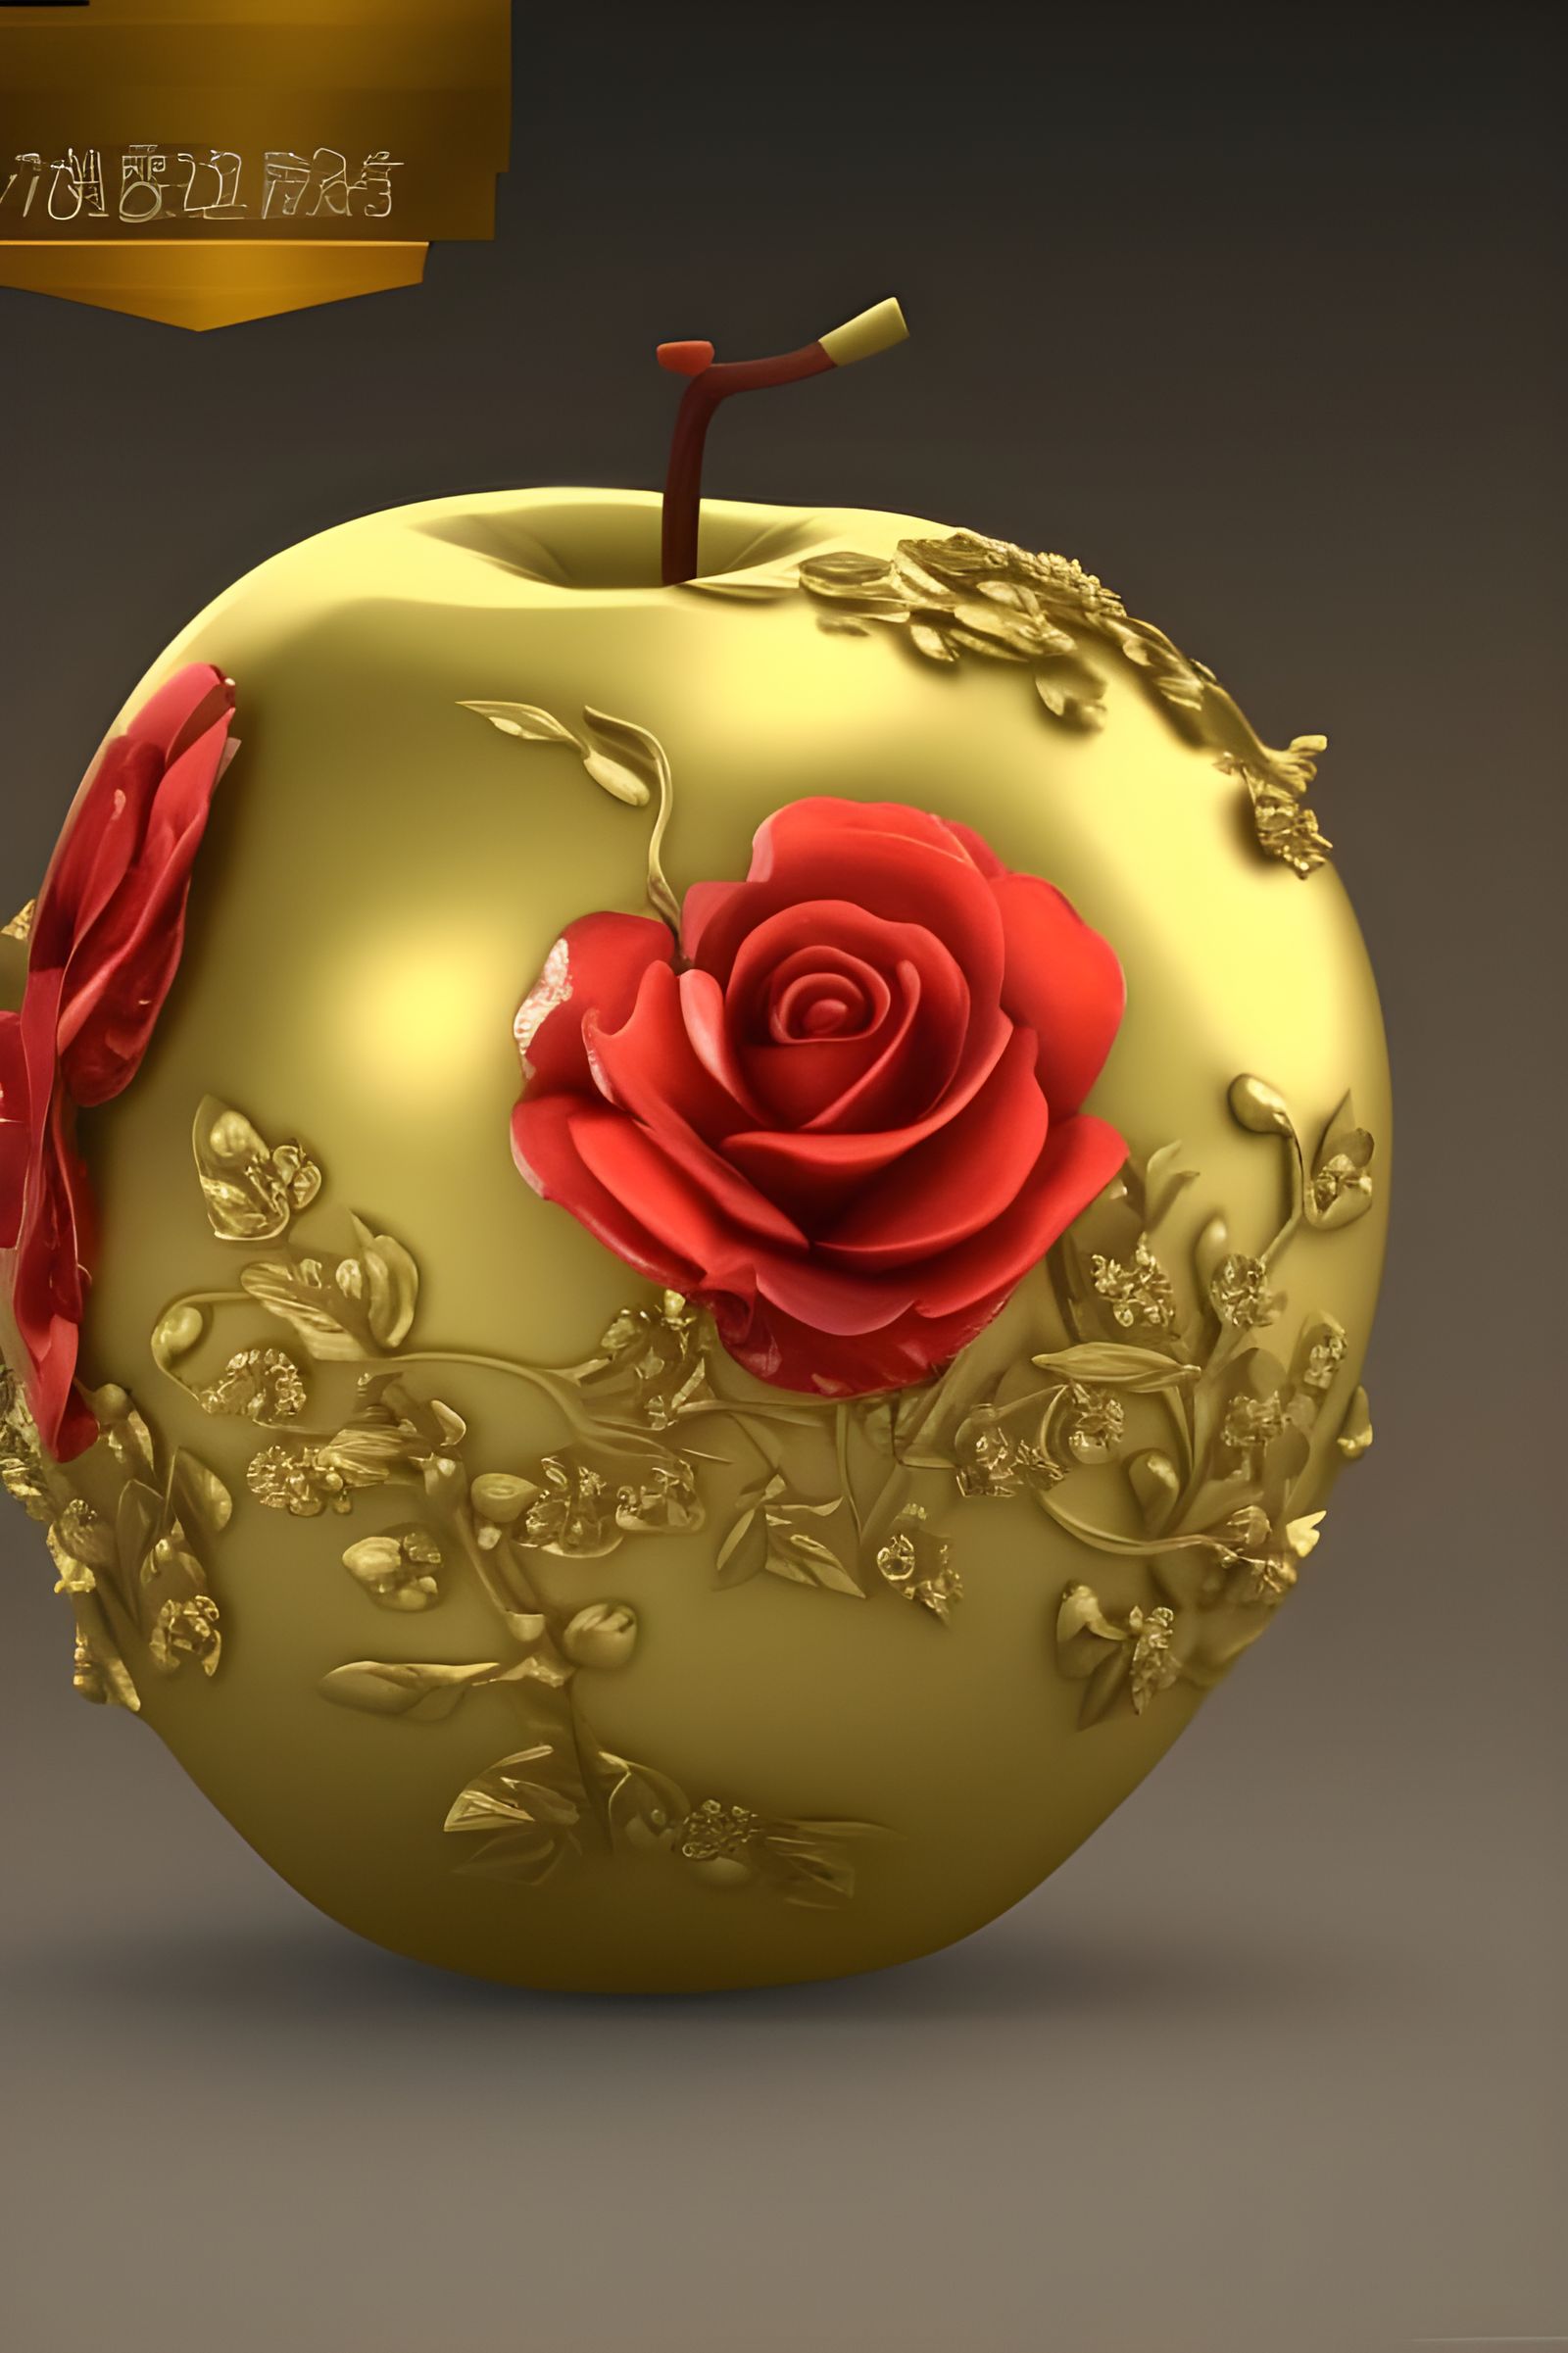 Golden Apple Studio and Golden Apple Art Residency